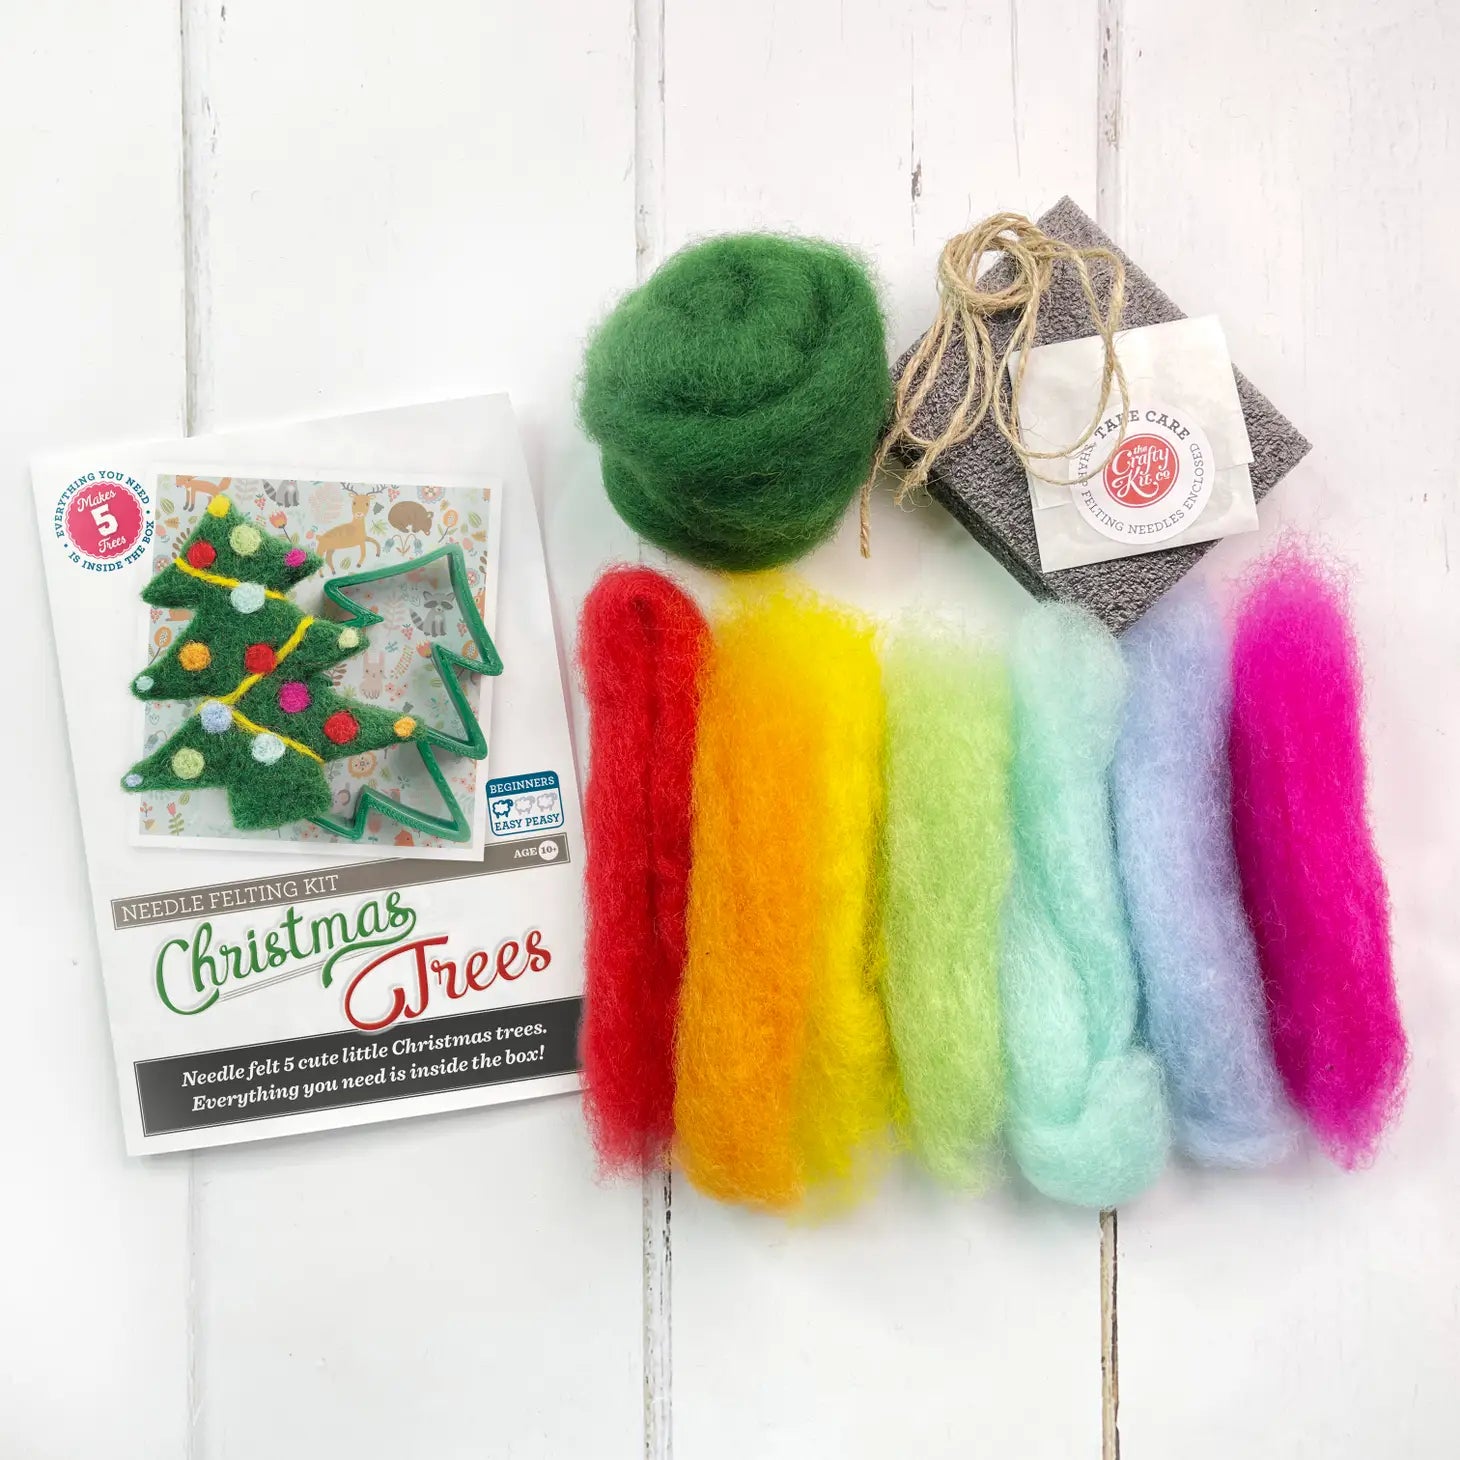 Crafty Kit Company Christmas Trees Needle felting kit